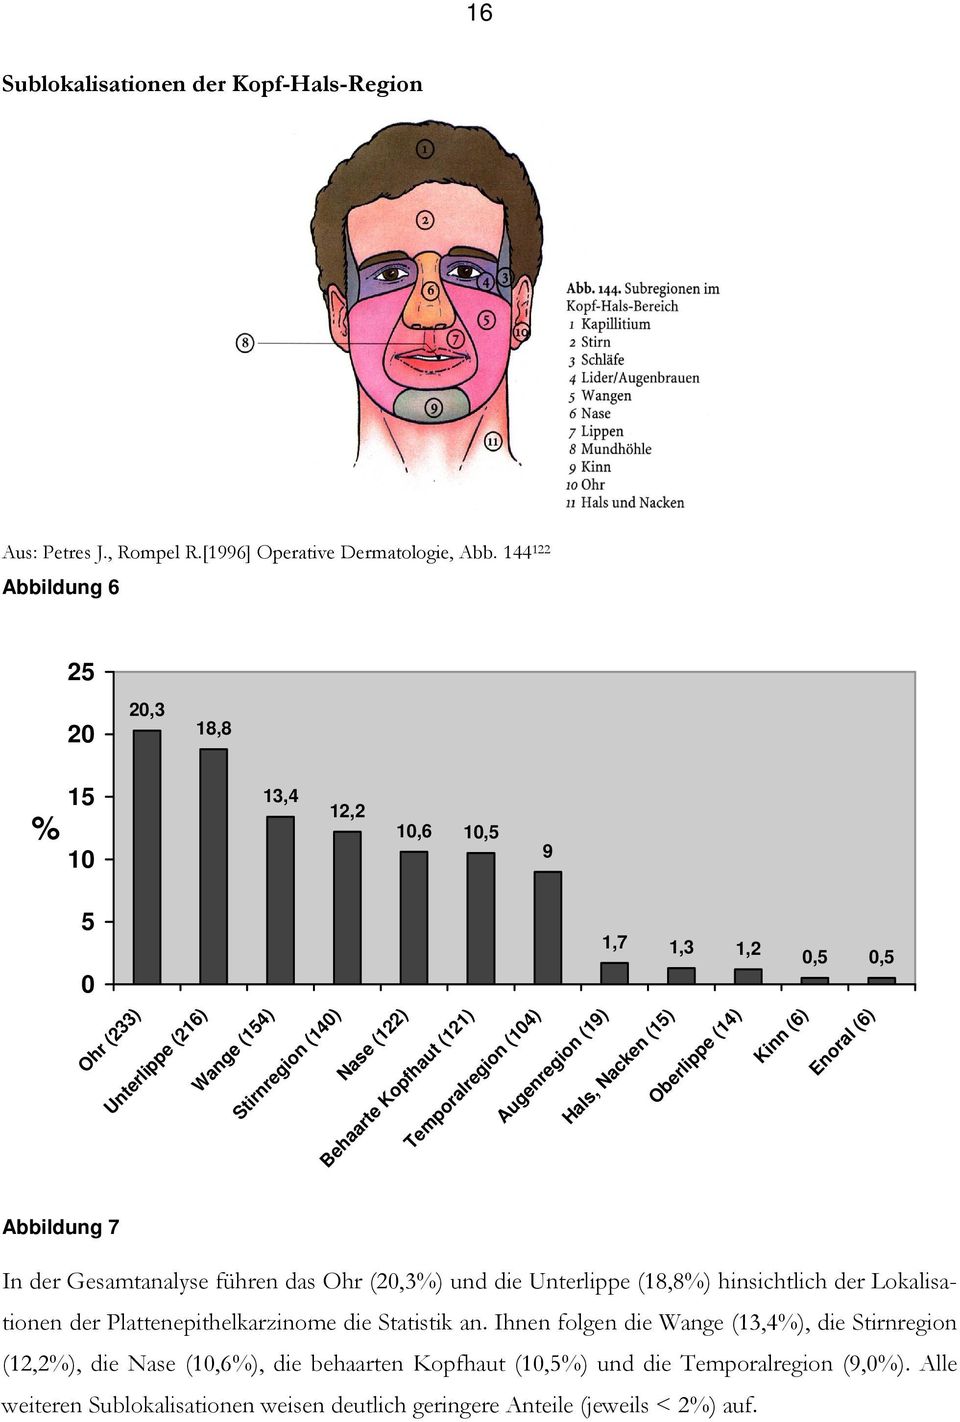 (19) 1,7 1,3 1,2 Hals, Nacken (15) Oberlippe (14) Kinn (6),5,5 Enoral (6) Abbildung 7 In der Gesamtanalyse führen das Ohr (2,3%) und die Unterlippe (18,8%) hinsichtlich der